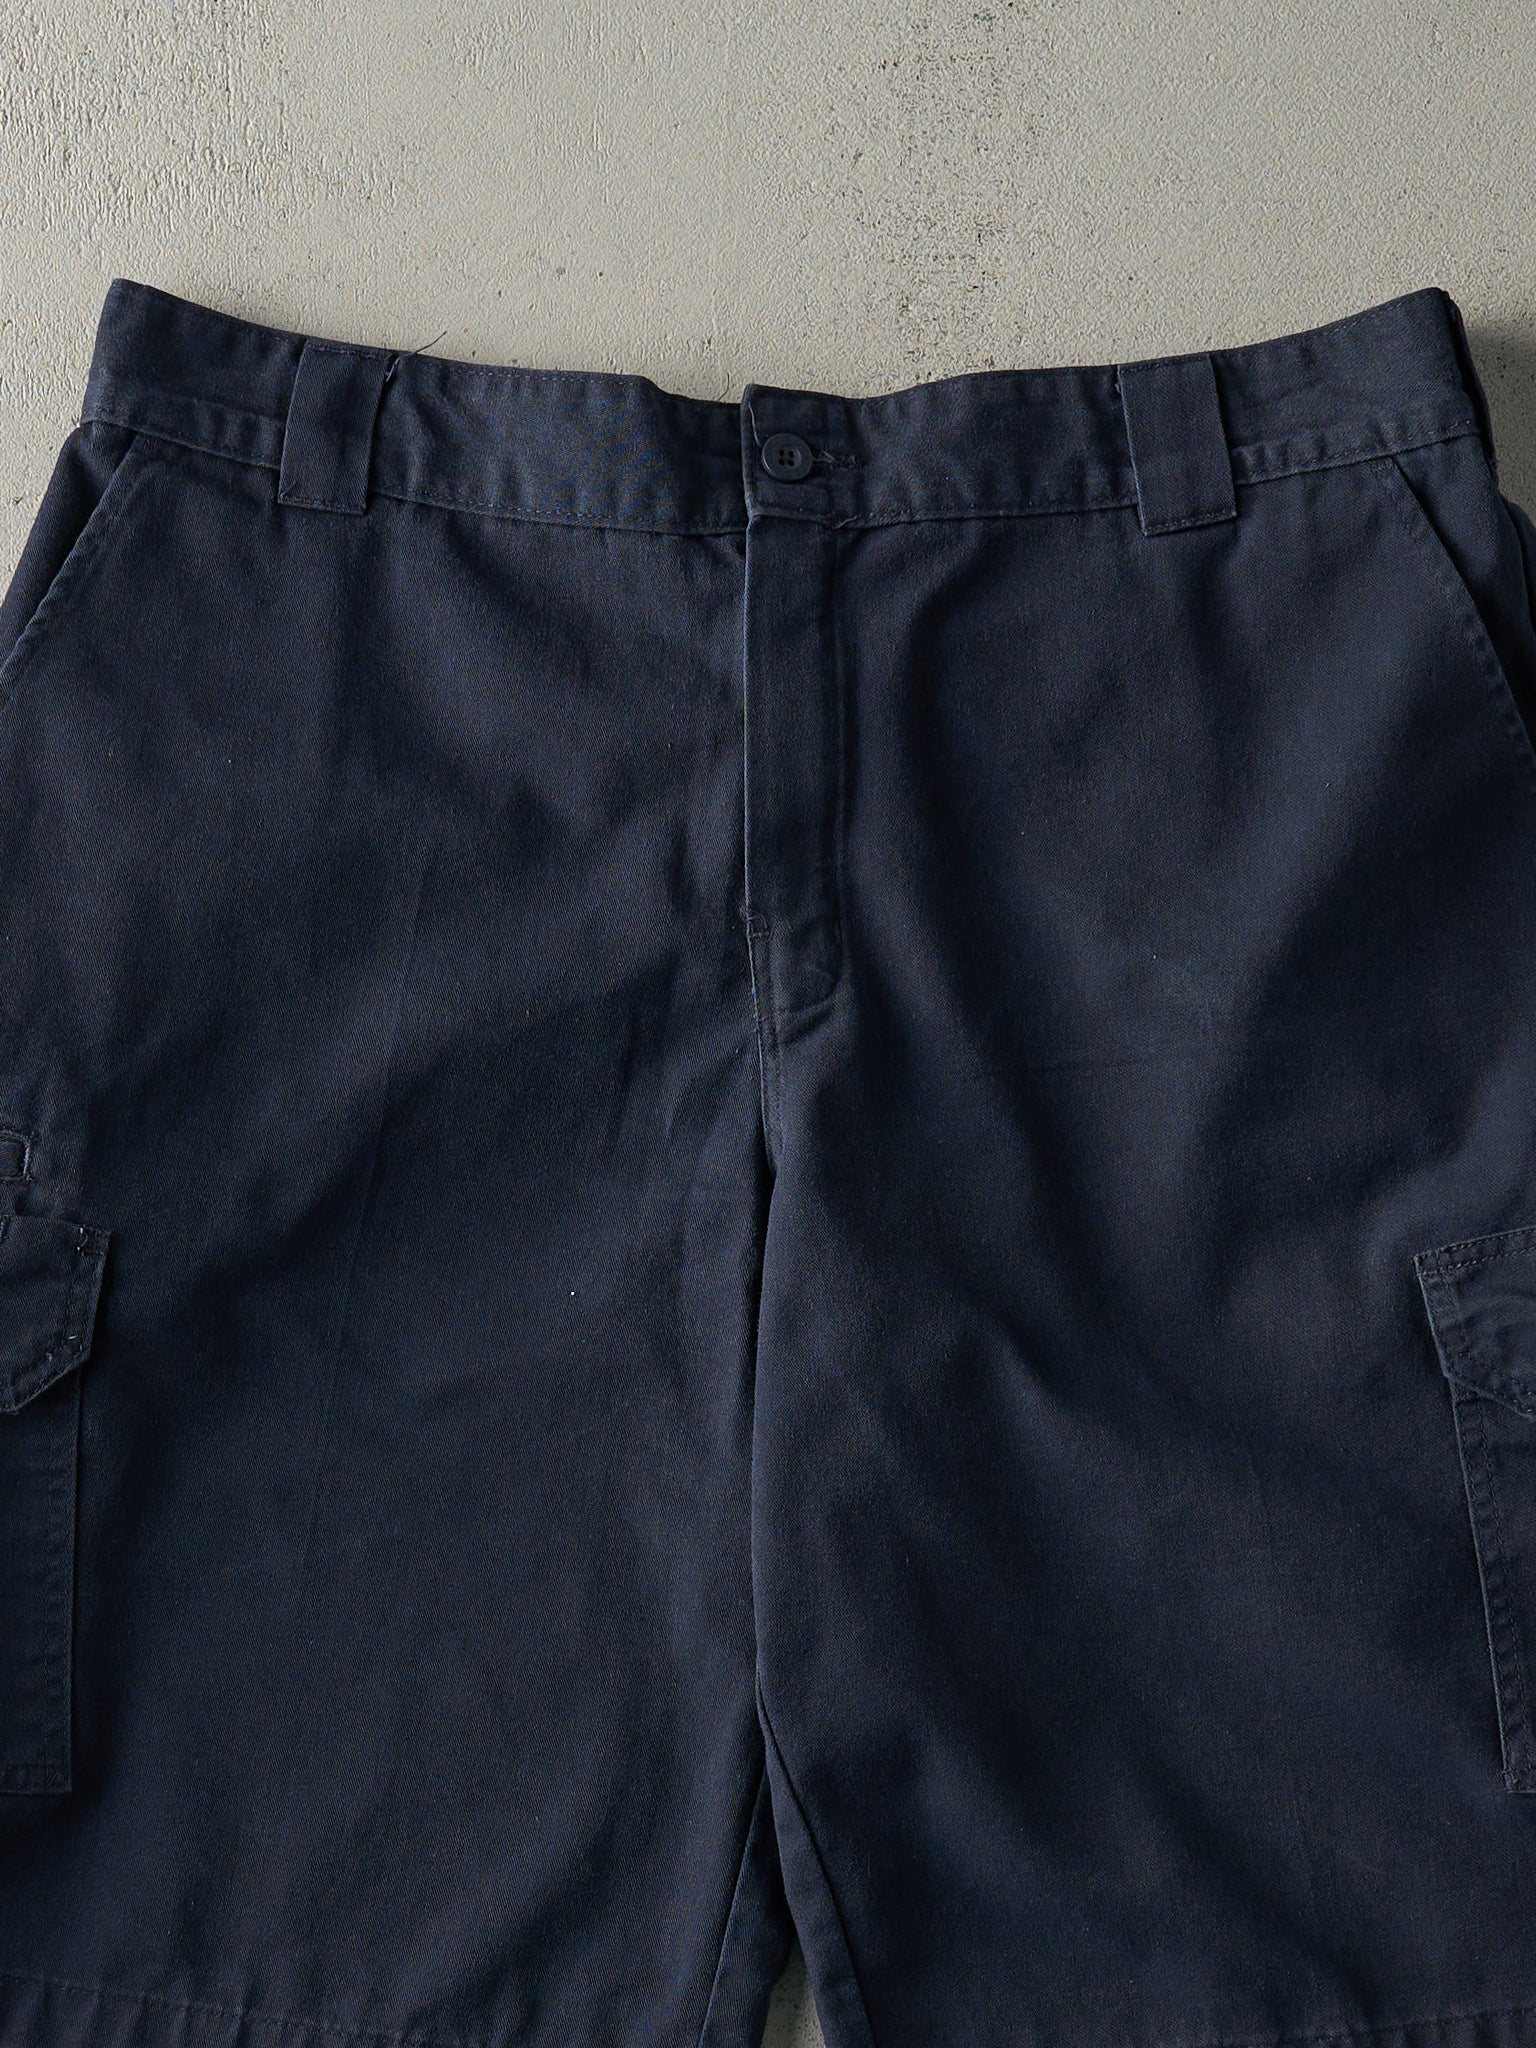 Vintage Y2K Navy Blue Dickies Cargo Shorts (38x12.5)